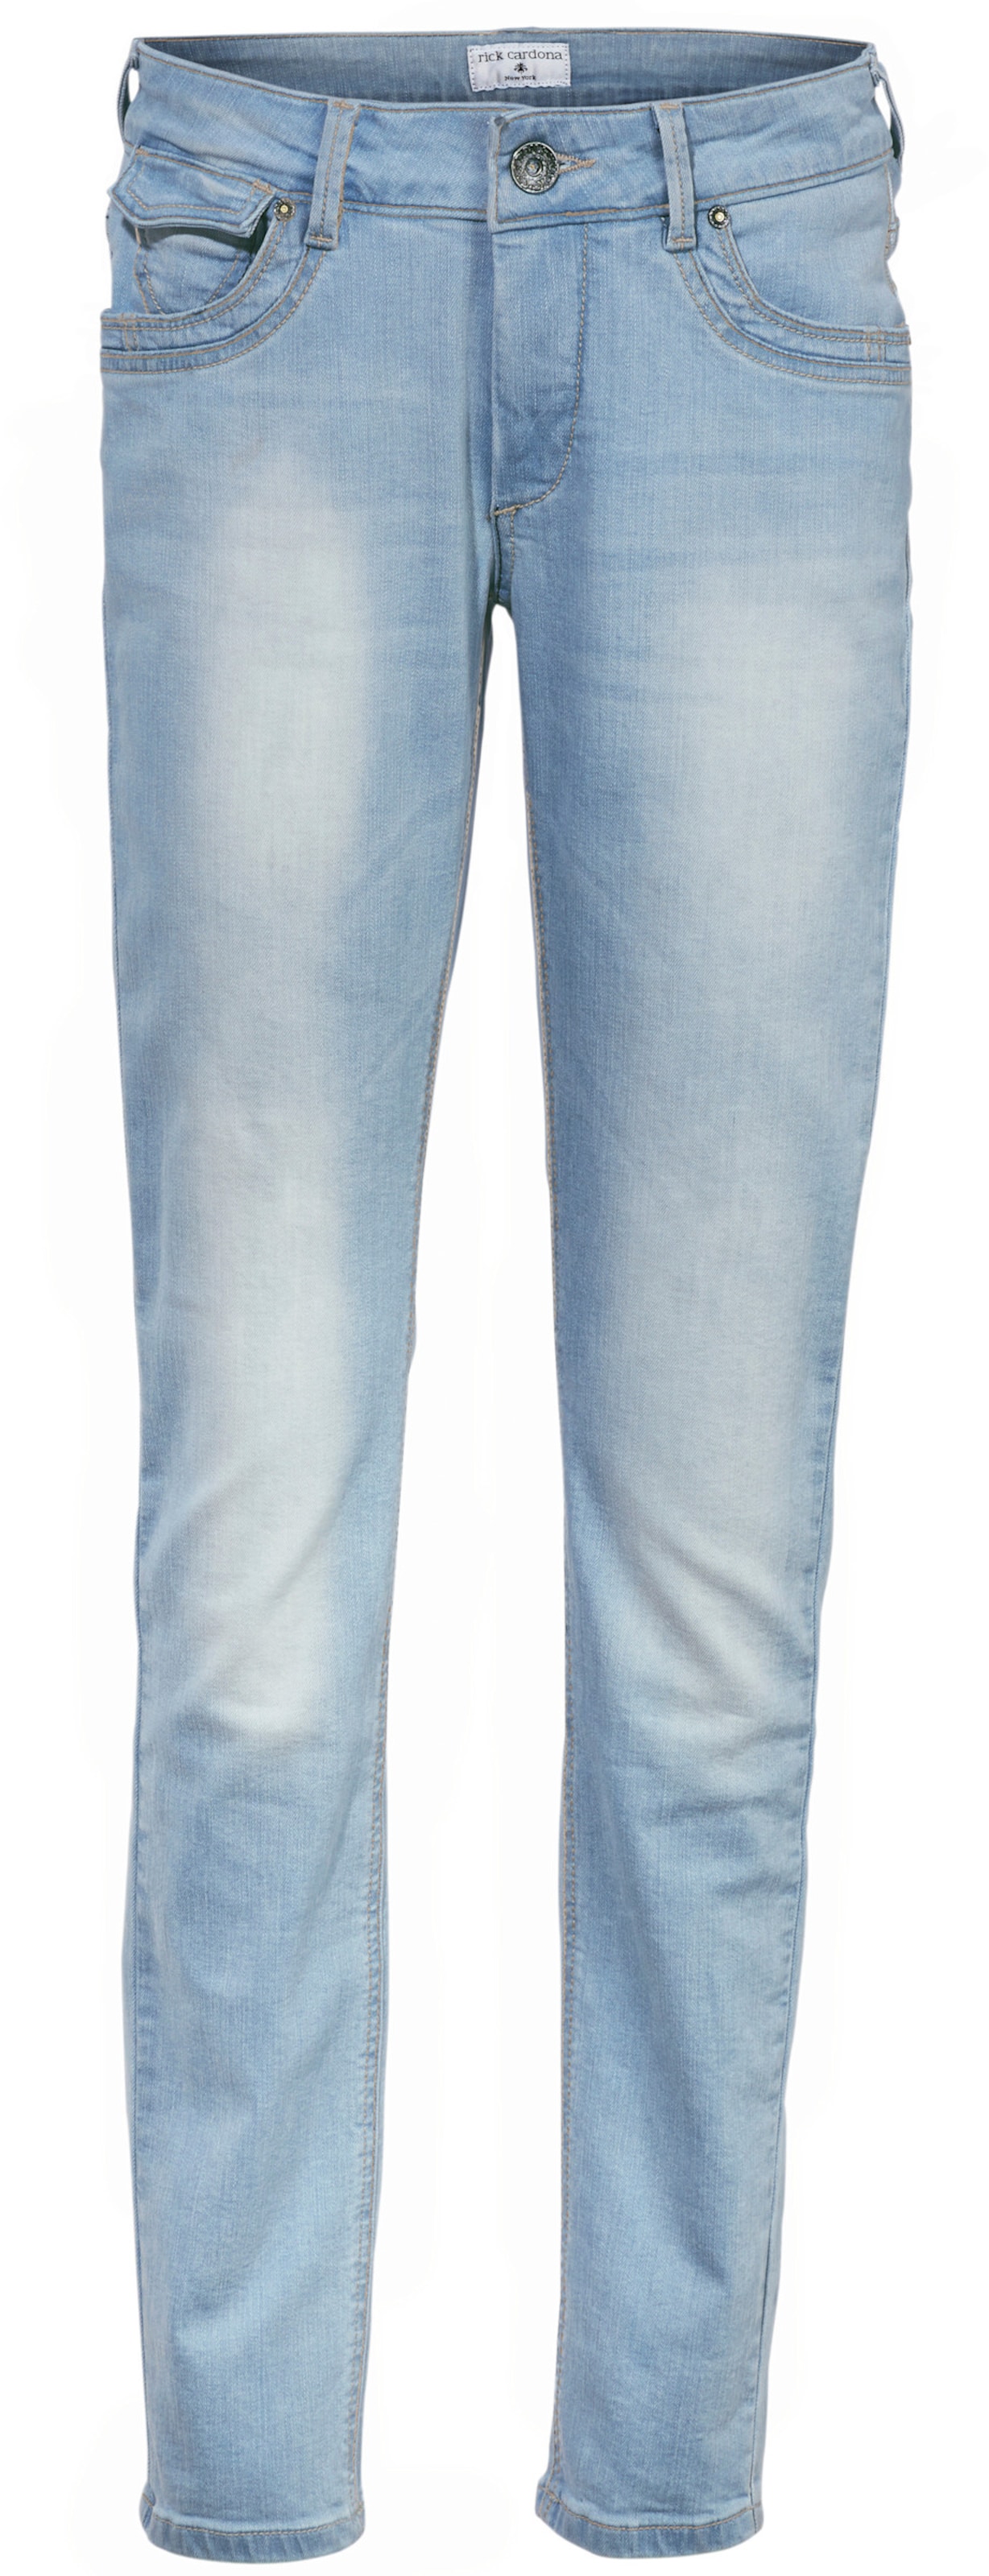 Witt Damen Bauchweg-Jeans, bleached